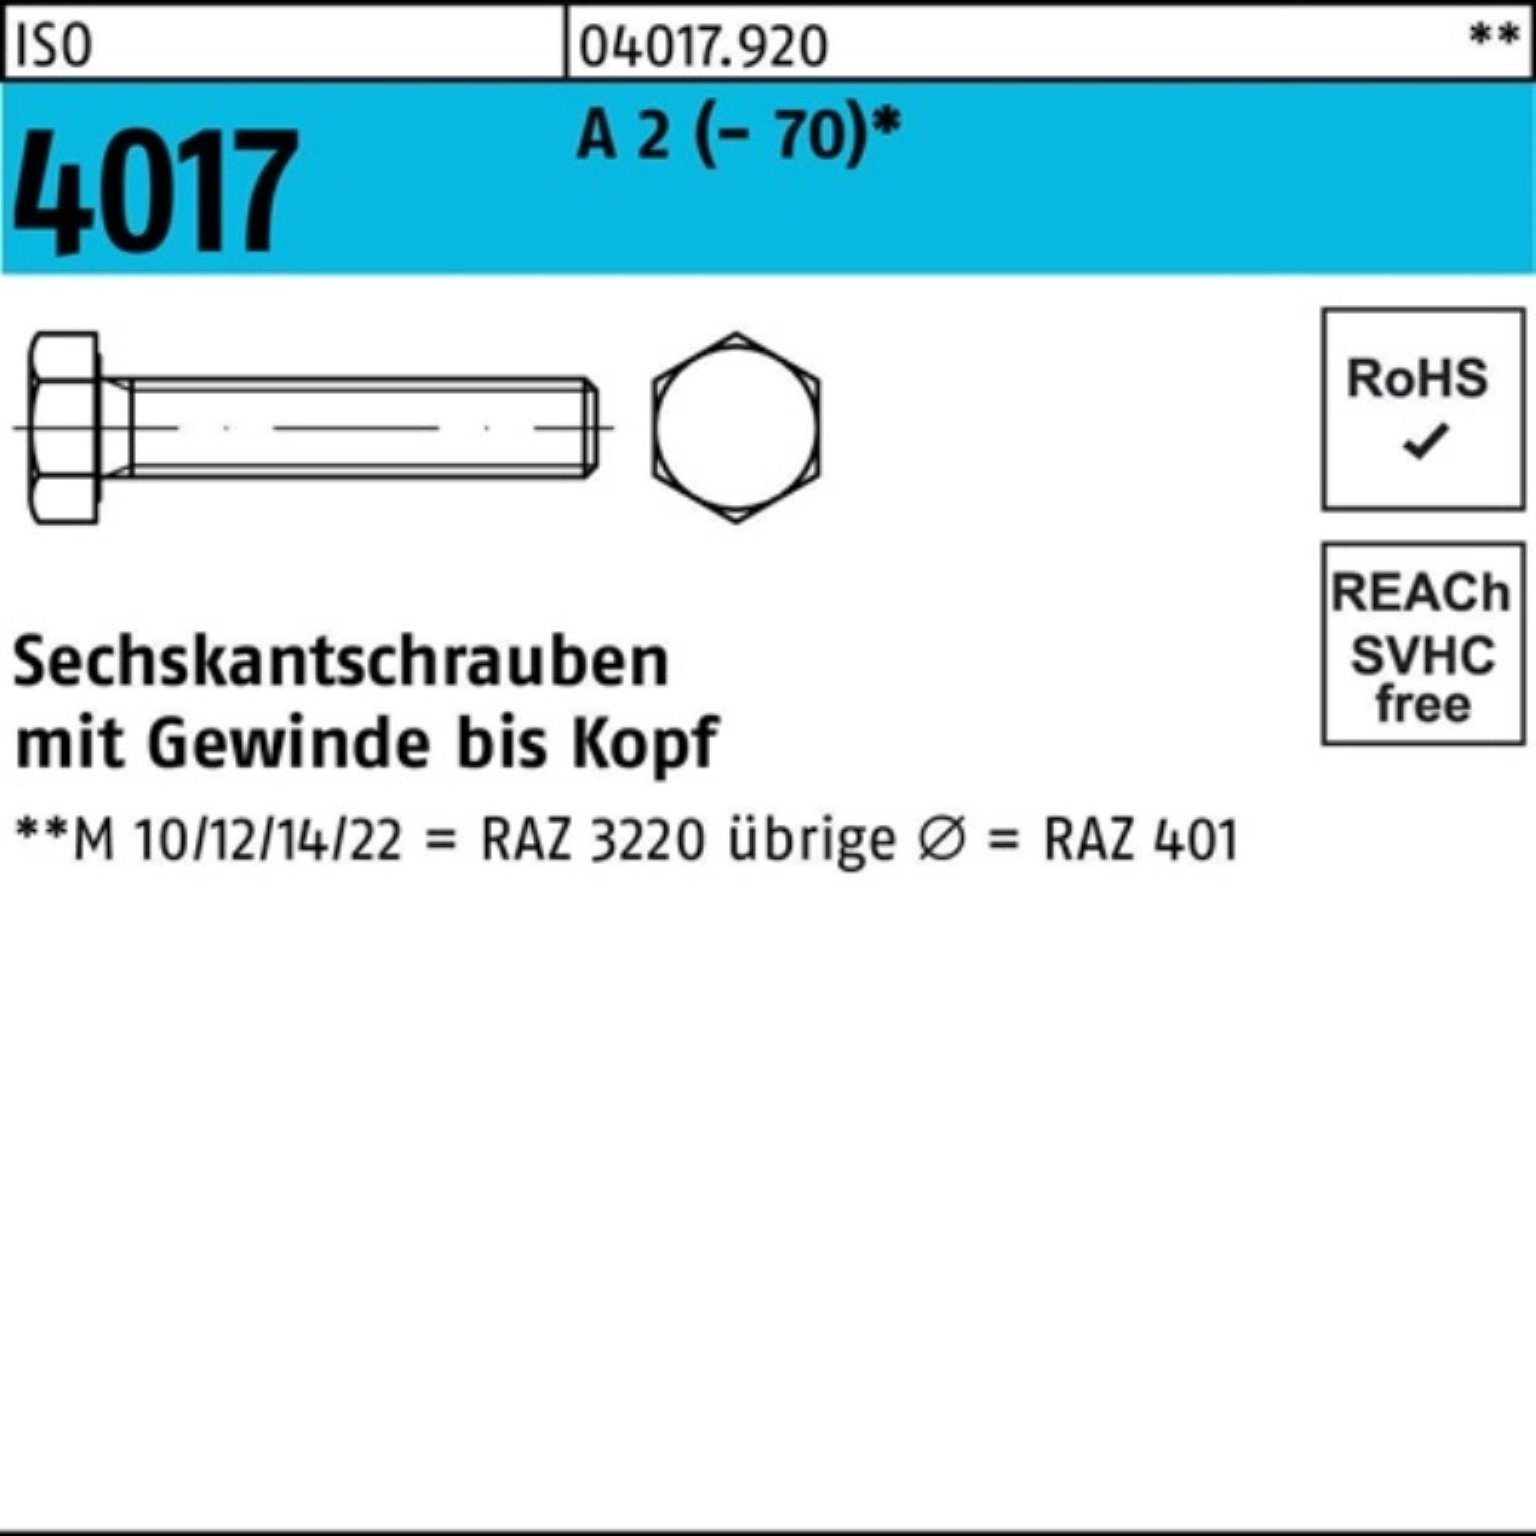 Bufab Sechskantschraube 200er Pack Sechskantschraube ISO 4017 VG M5x 40 A 2 (70) 200 Stück